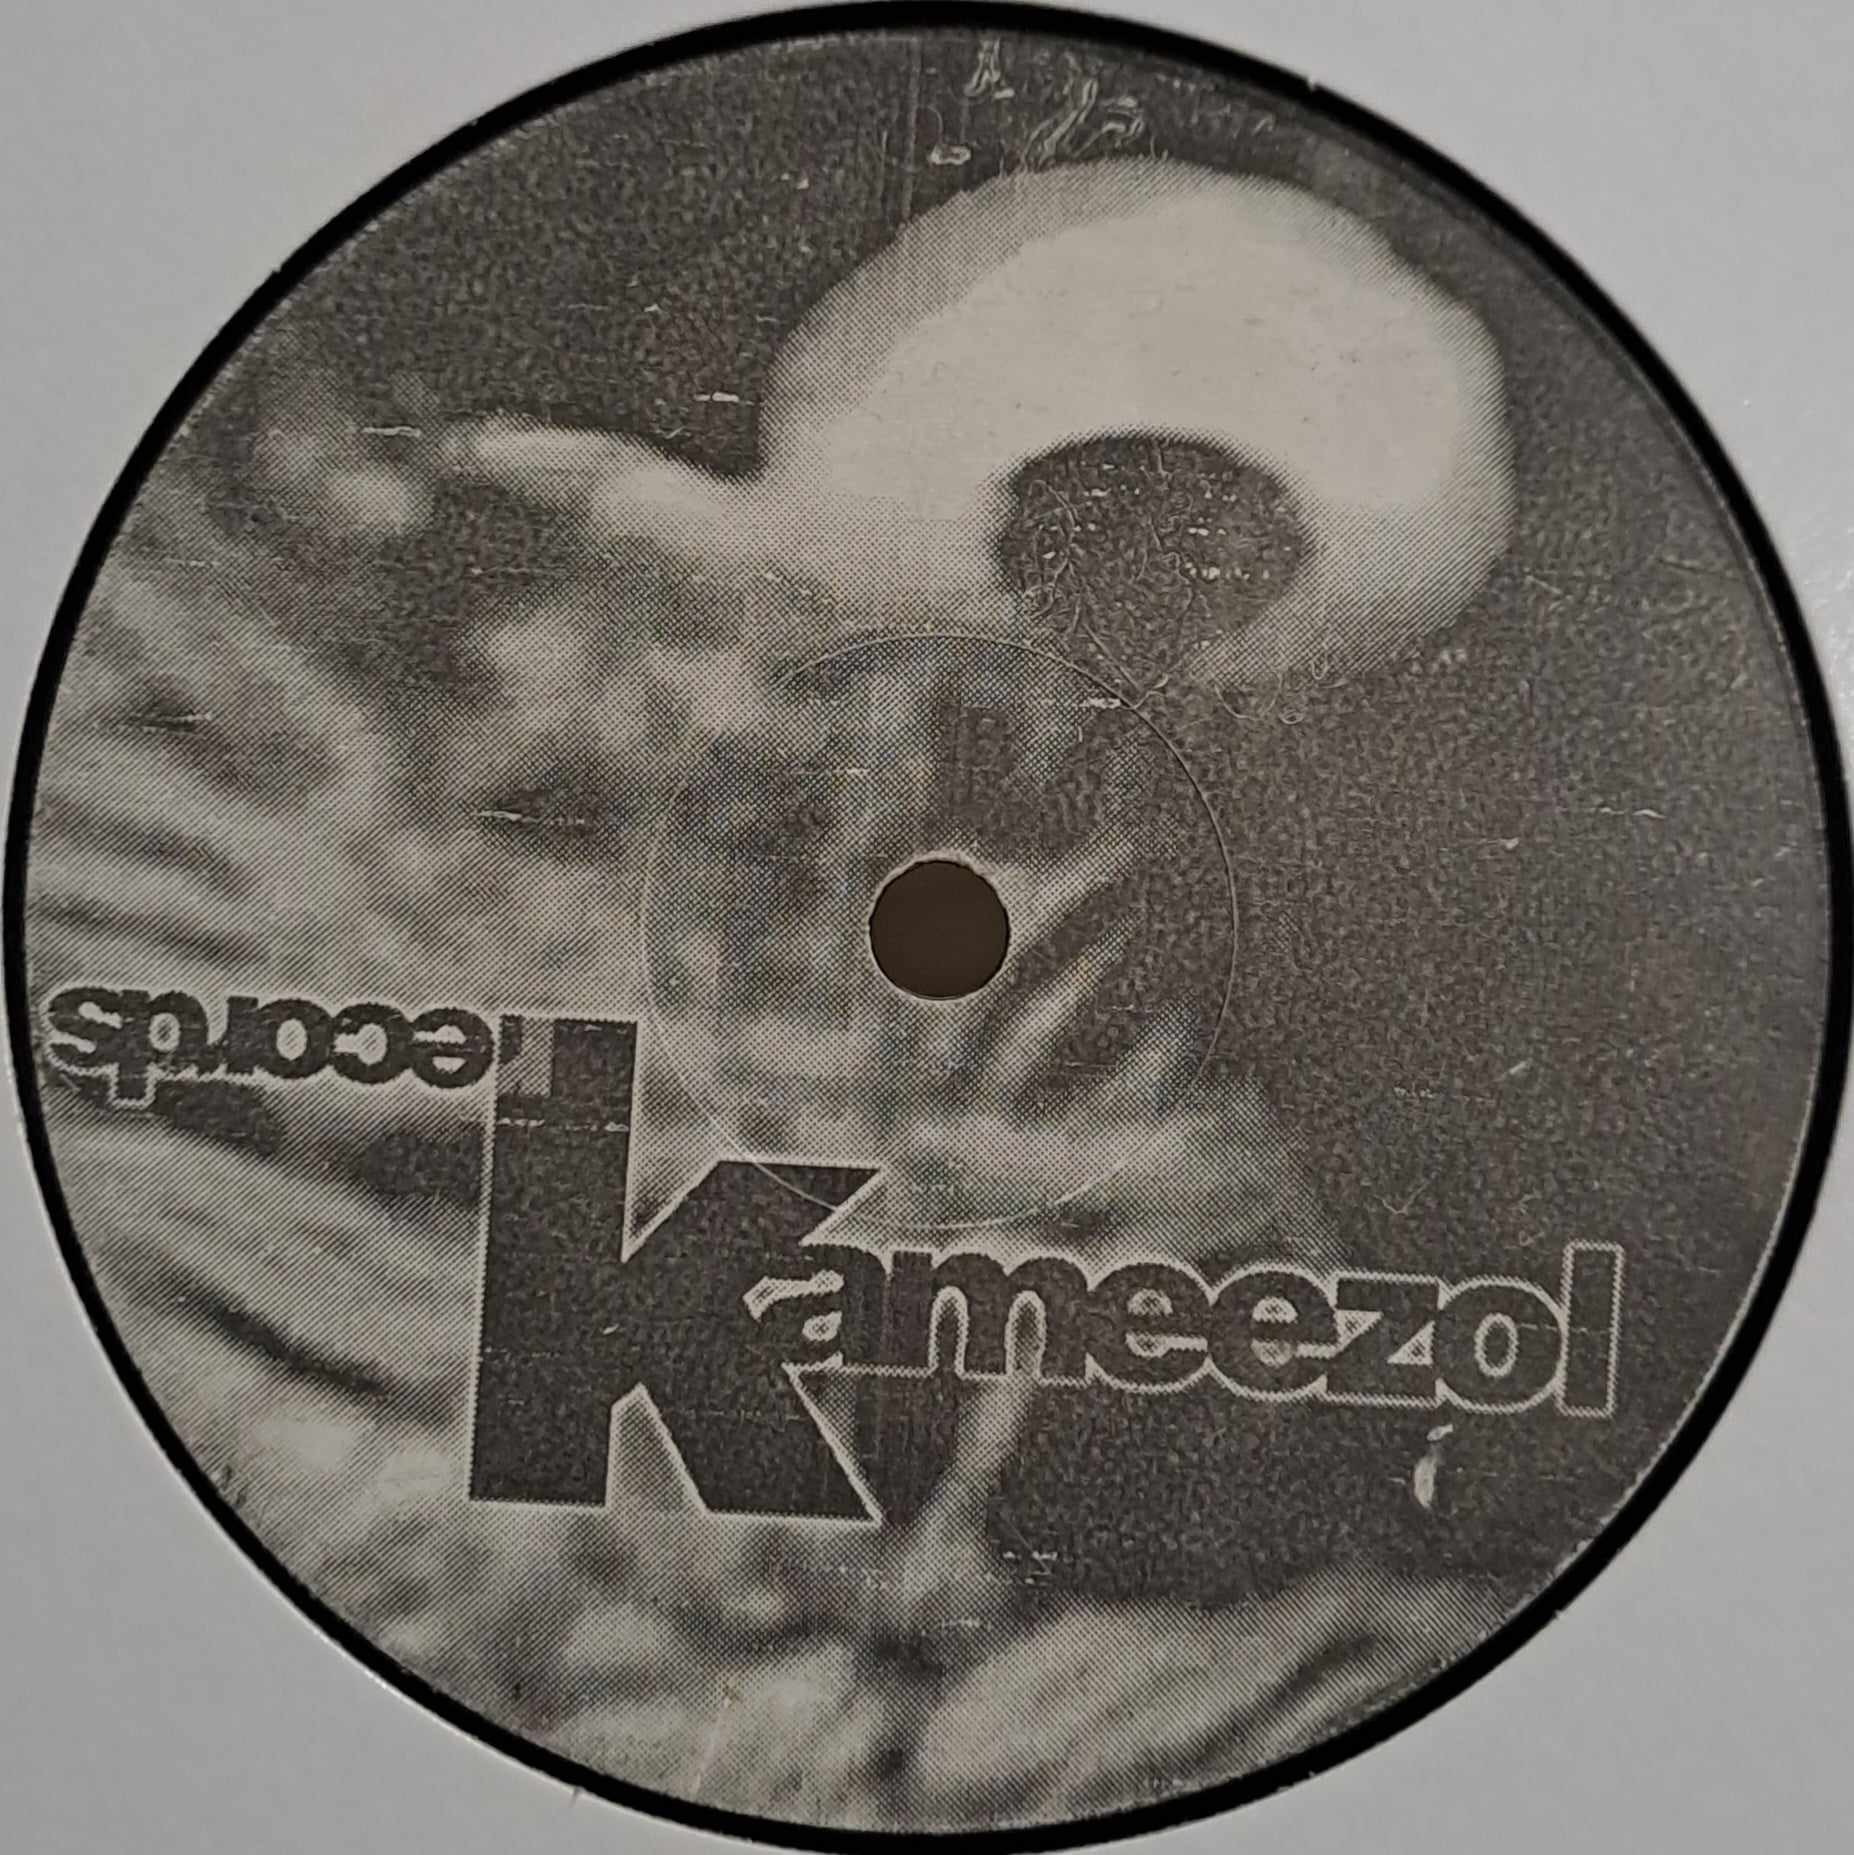 Kameezol Records 01 - vinyle hardcore